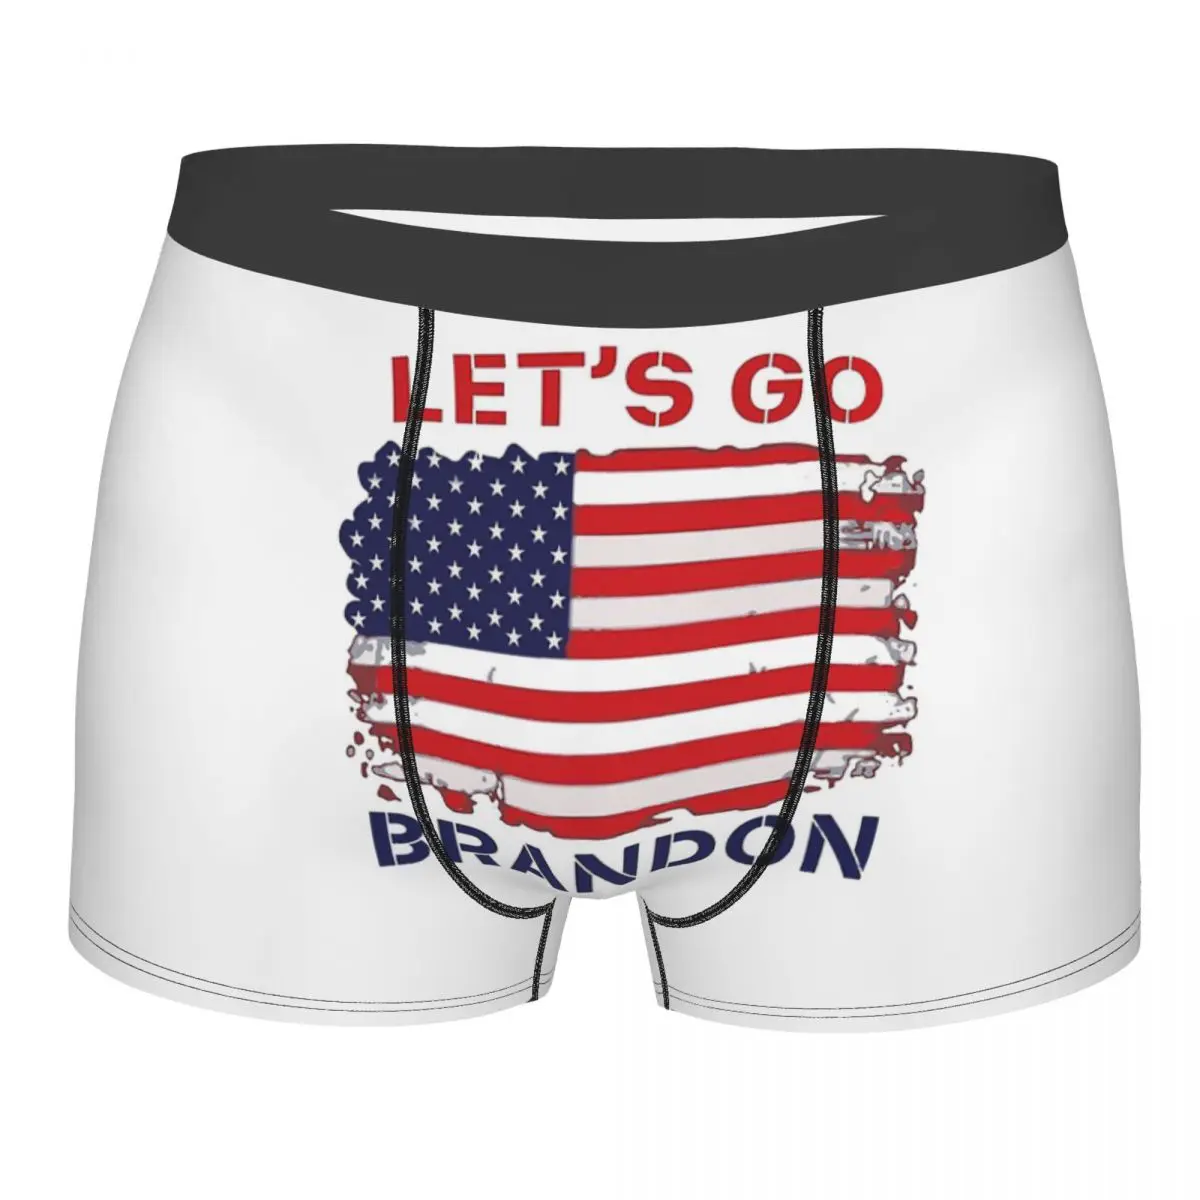 Let's Go Brandon LMen Women Vintage American National Flag Underpants Panties Men's Underwear Sexy Shorts Boxer Briefs